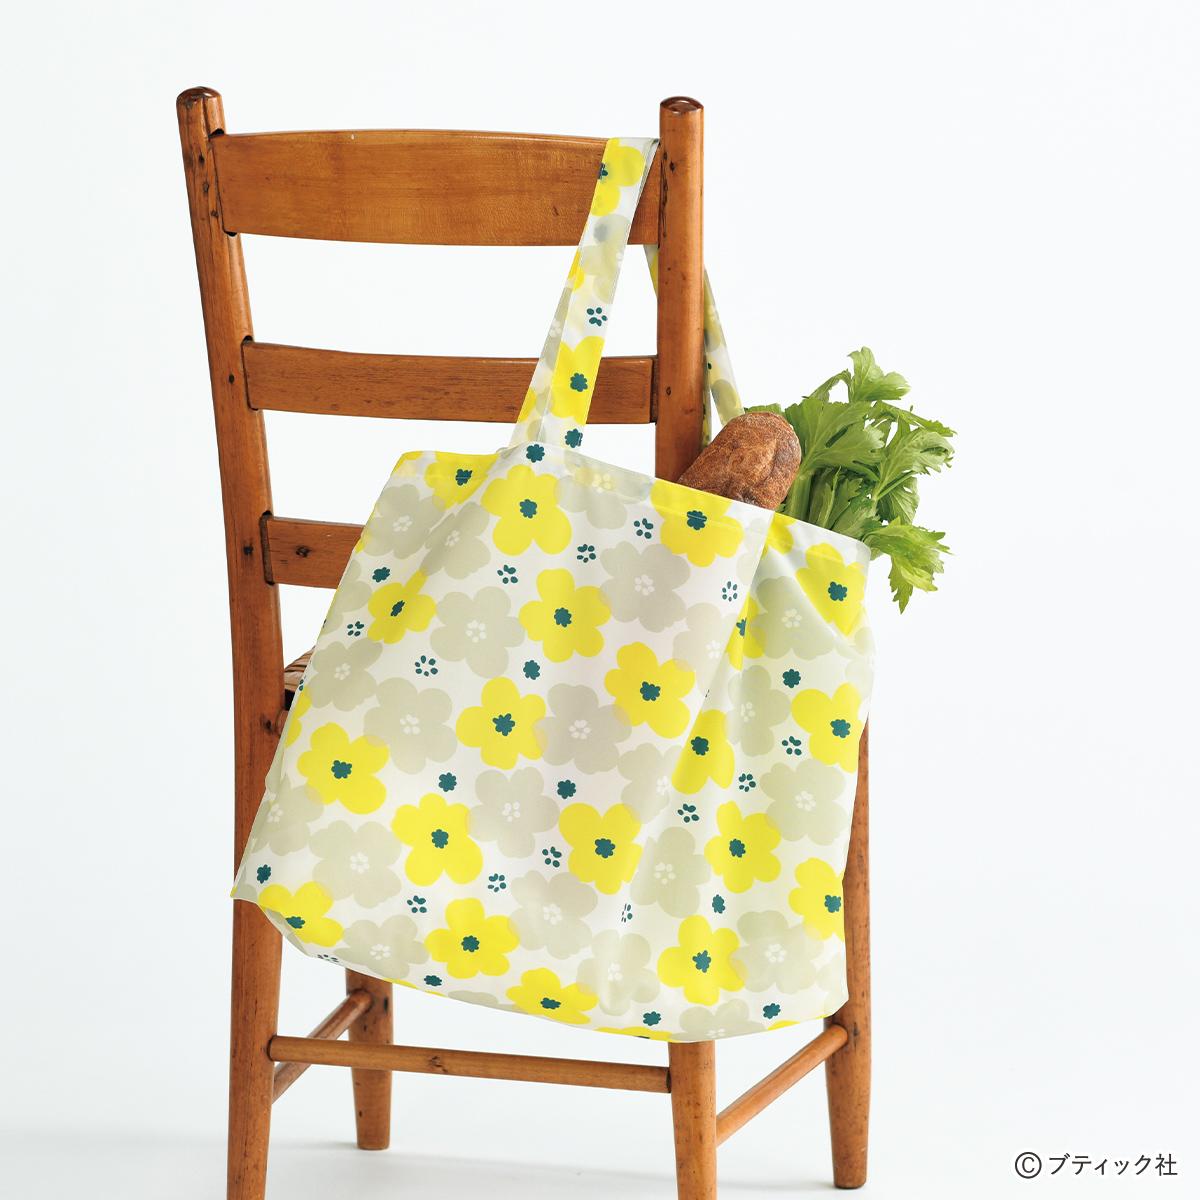 黄草という植物で編むおしゃれバッグ | legaleagle.co.nz